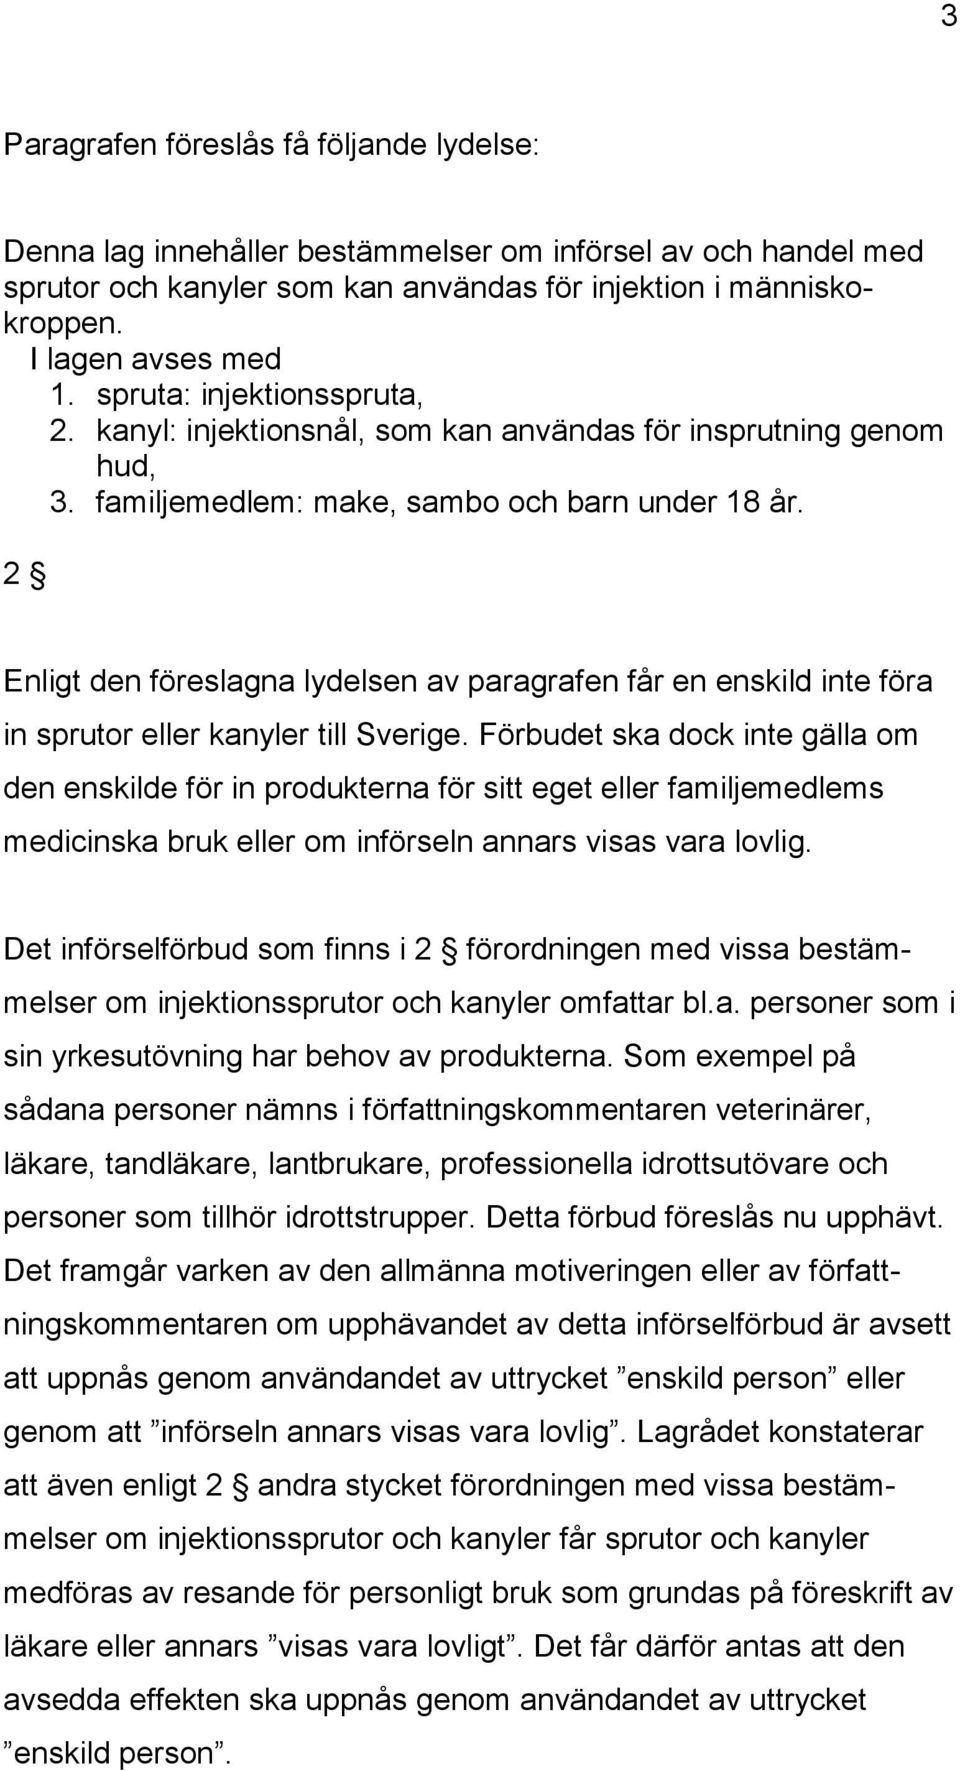 2 Enligt den föreslagna lydelsen av paragrafen får en enskild inte föra in sprutor eller kanyler till Sverige.